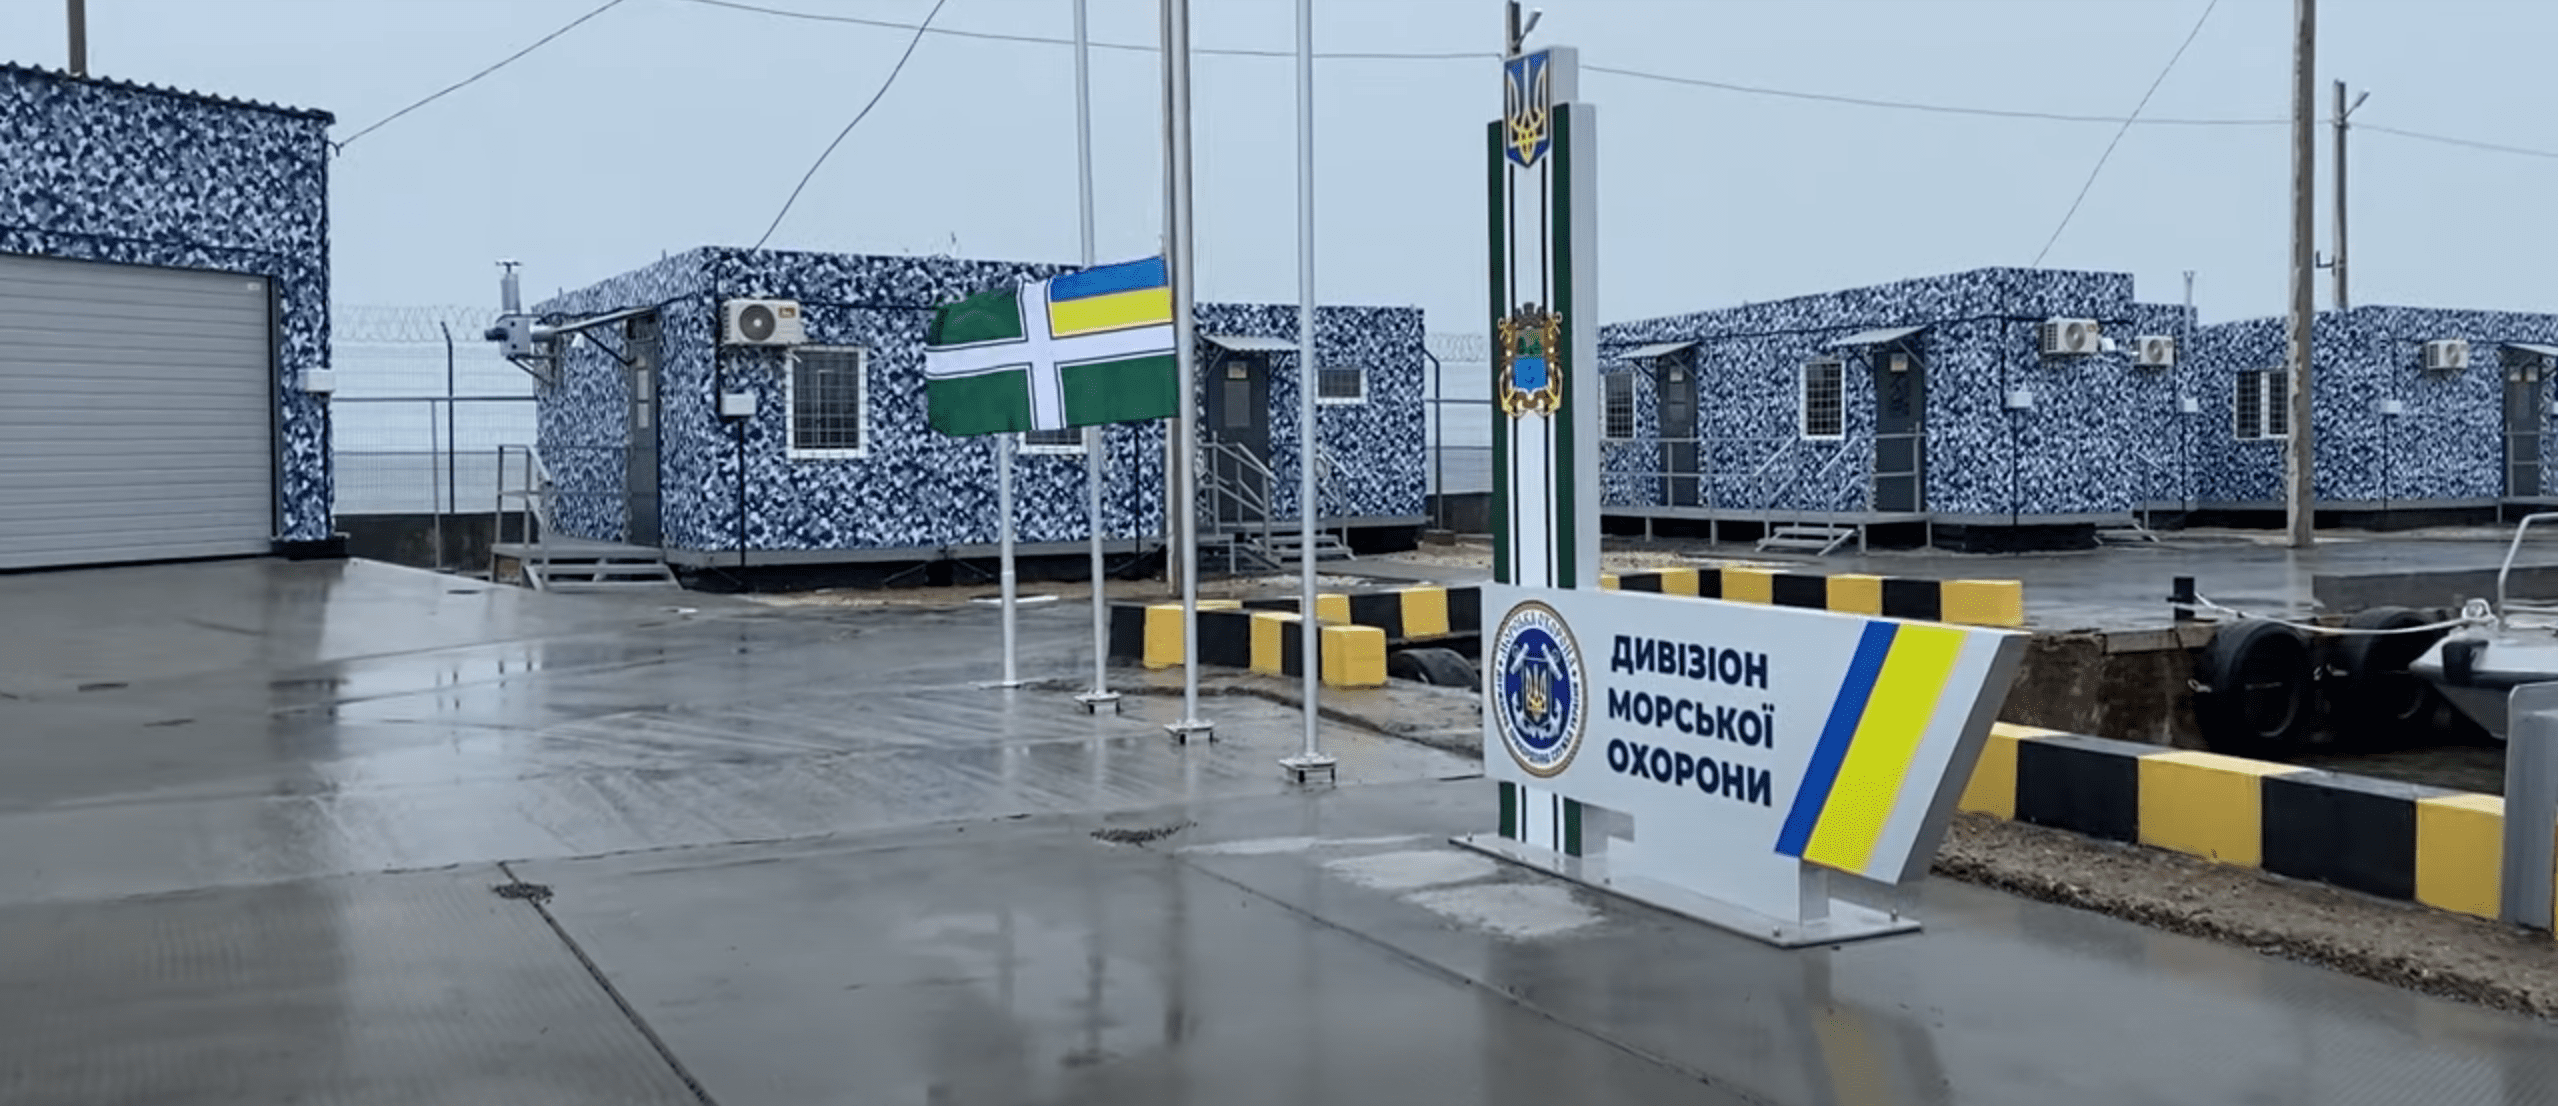 В Бердянске открыли новую военно-морскую базу Украины